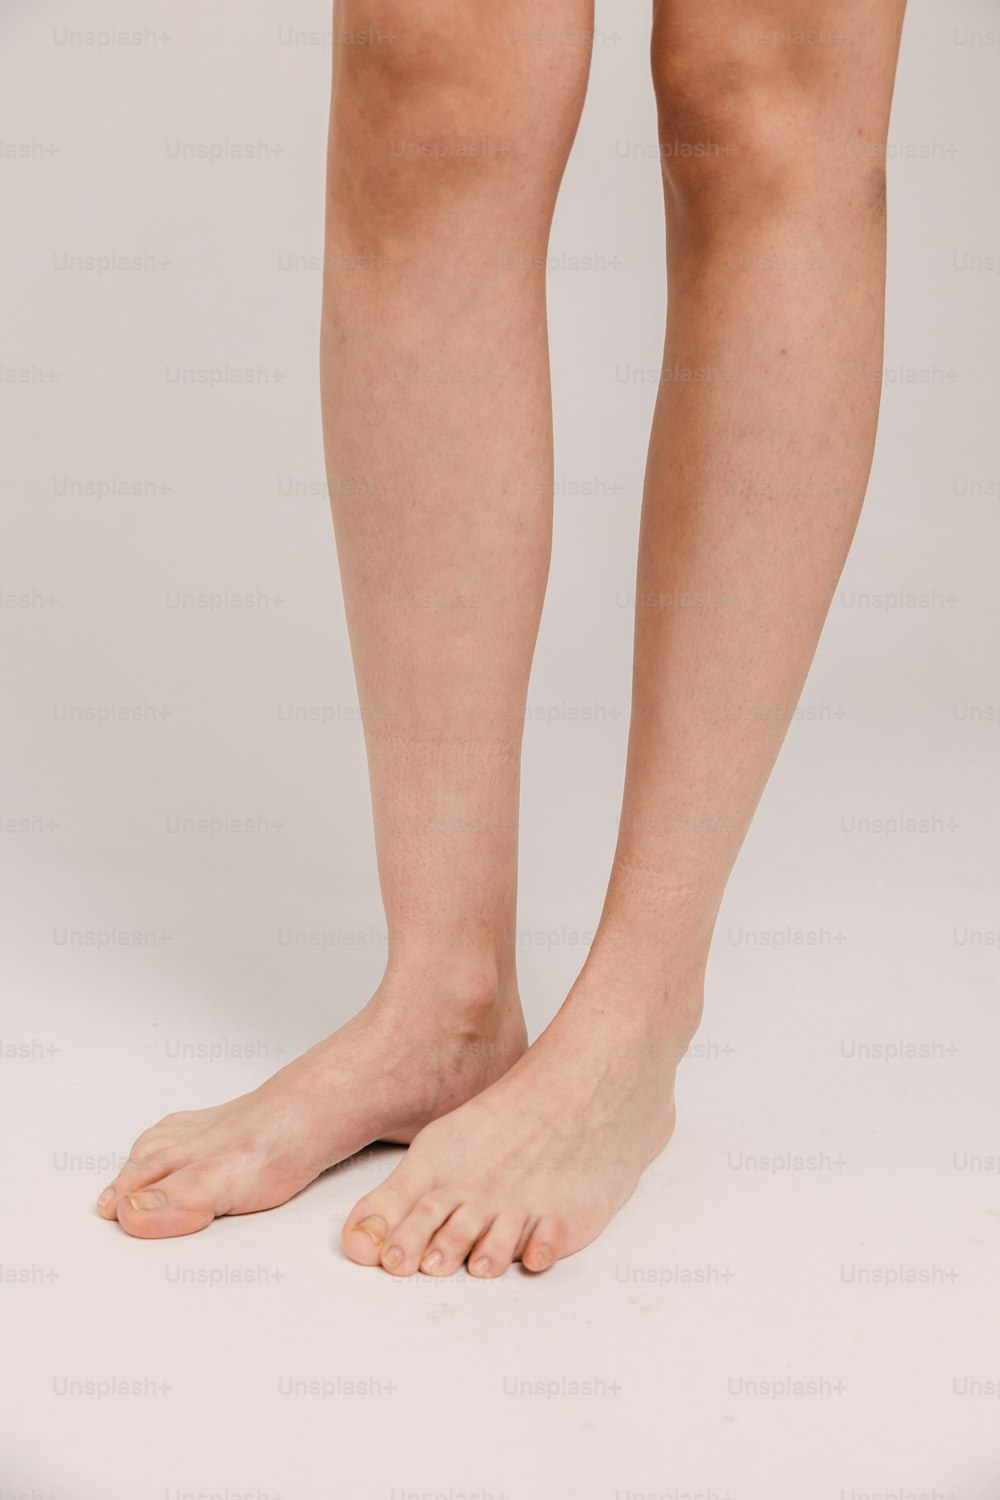 Les jambes et les jambes nues d’une femme sont montrées